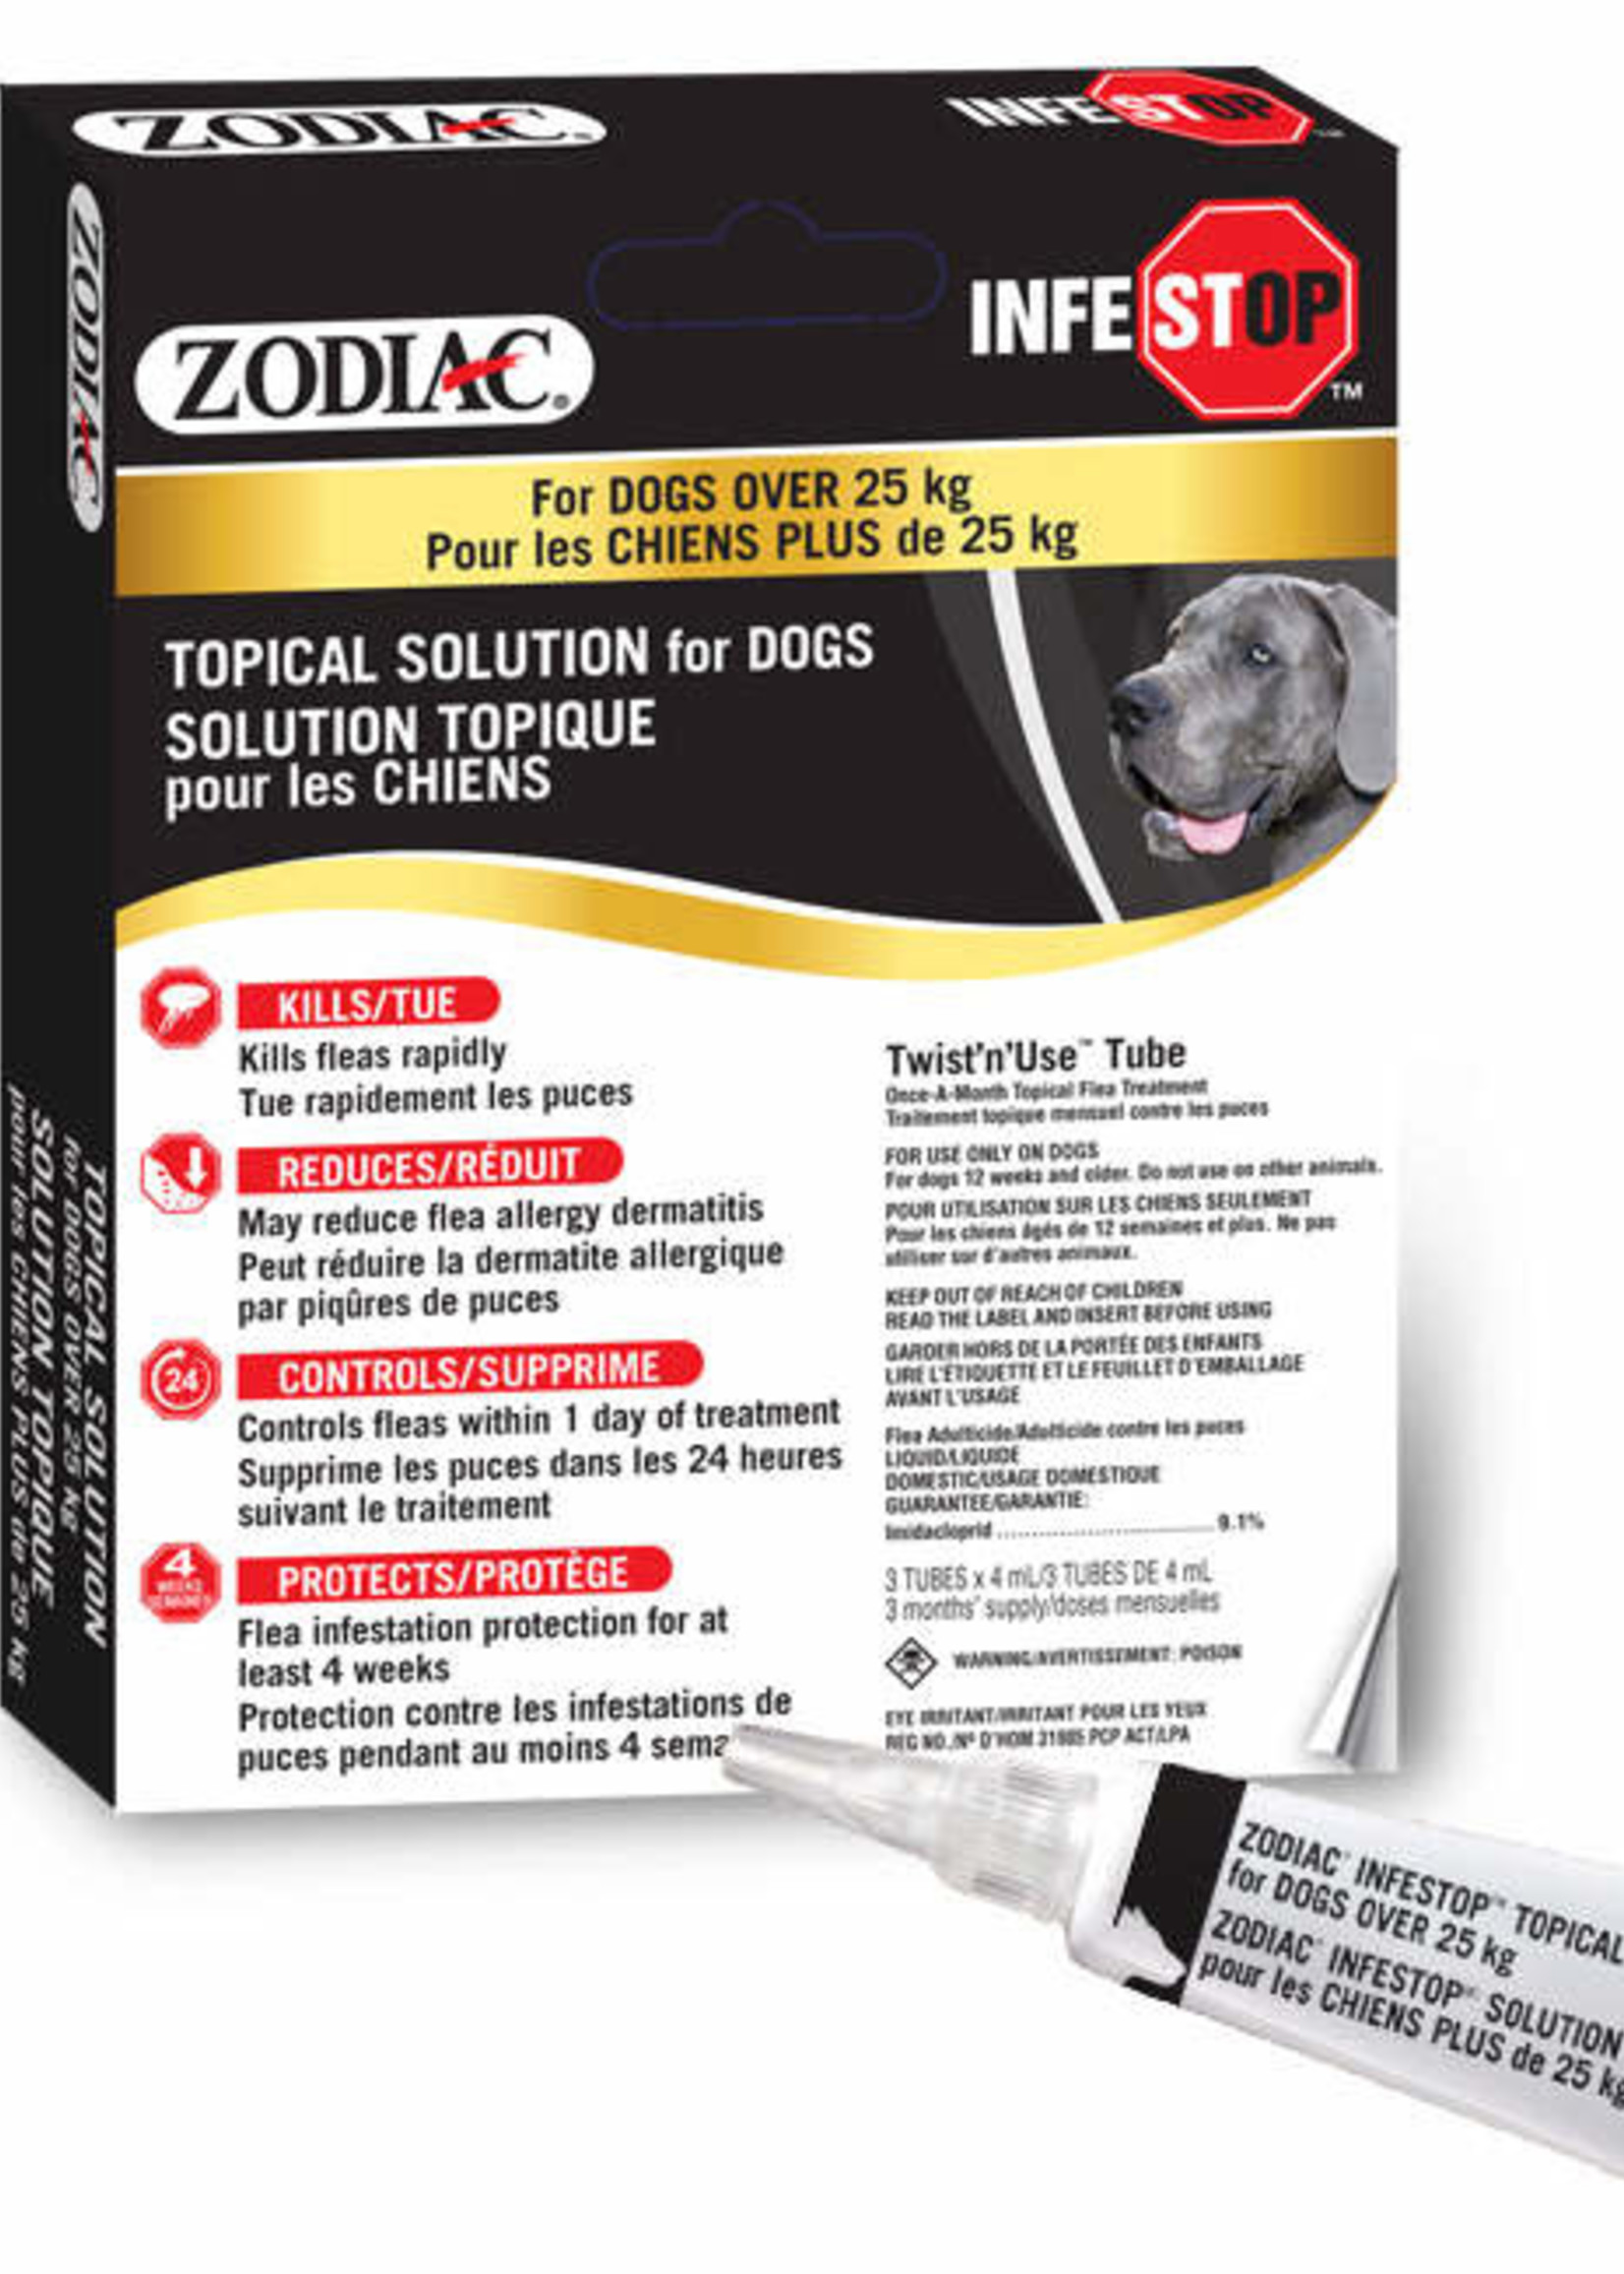 Zodiac® Zodiac® Infestop™ for Dogs over 25kG